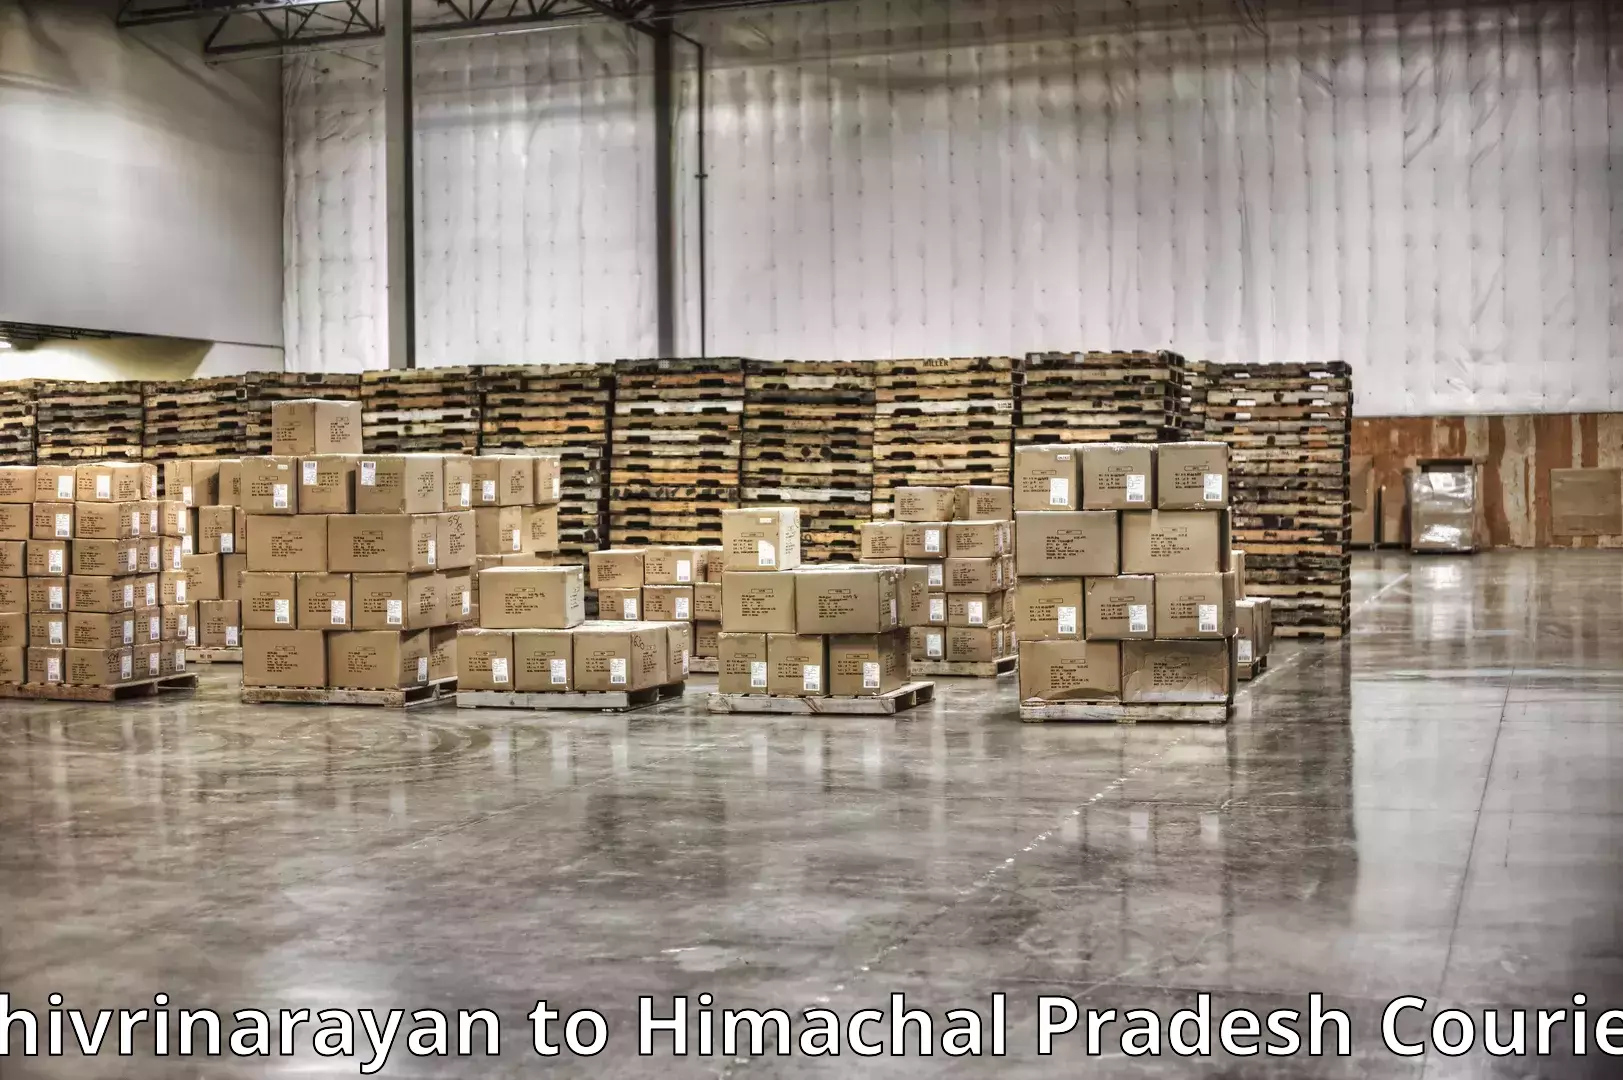 Furniture transport experts Shivrinarayan to Nurpur